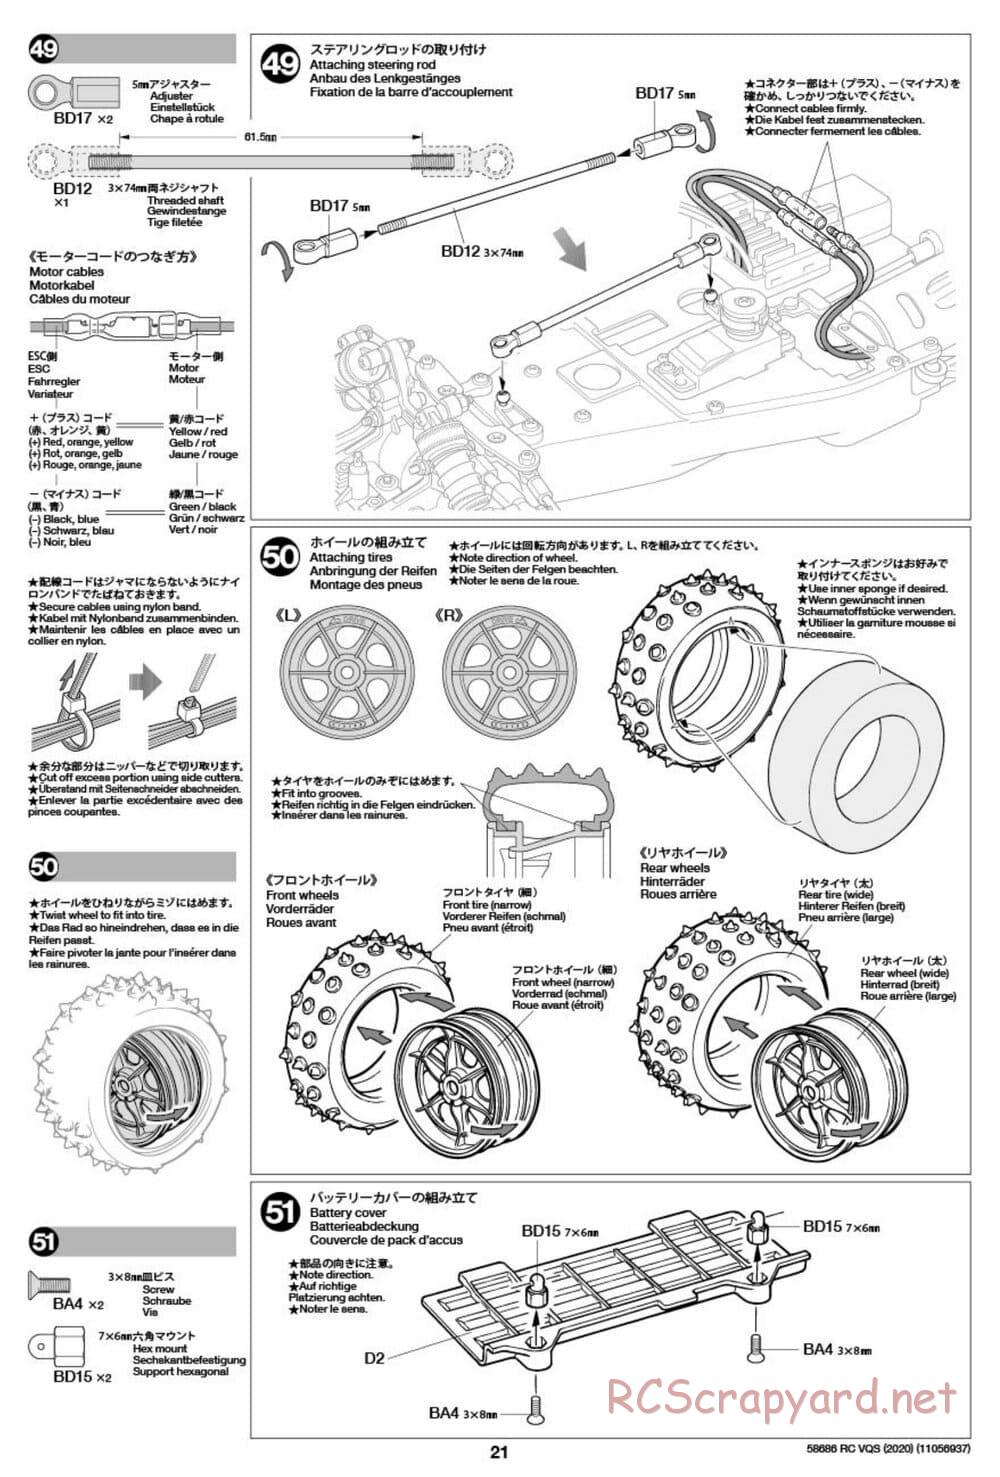 Tamiya - VQS (2020) - AV Chassis - Manual - Page 21